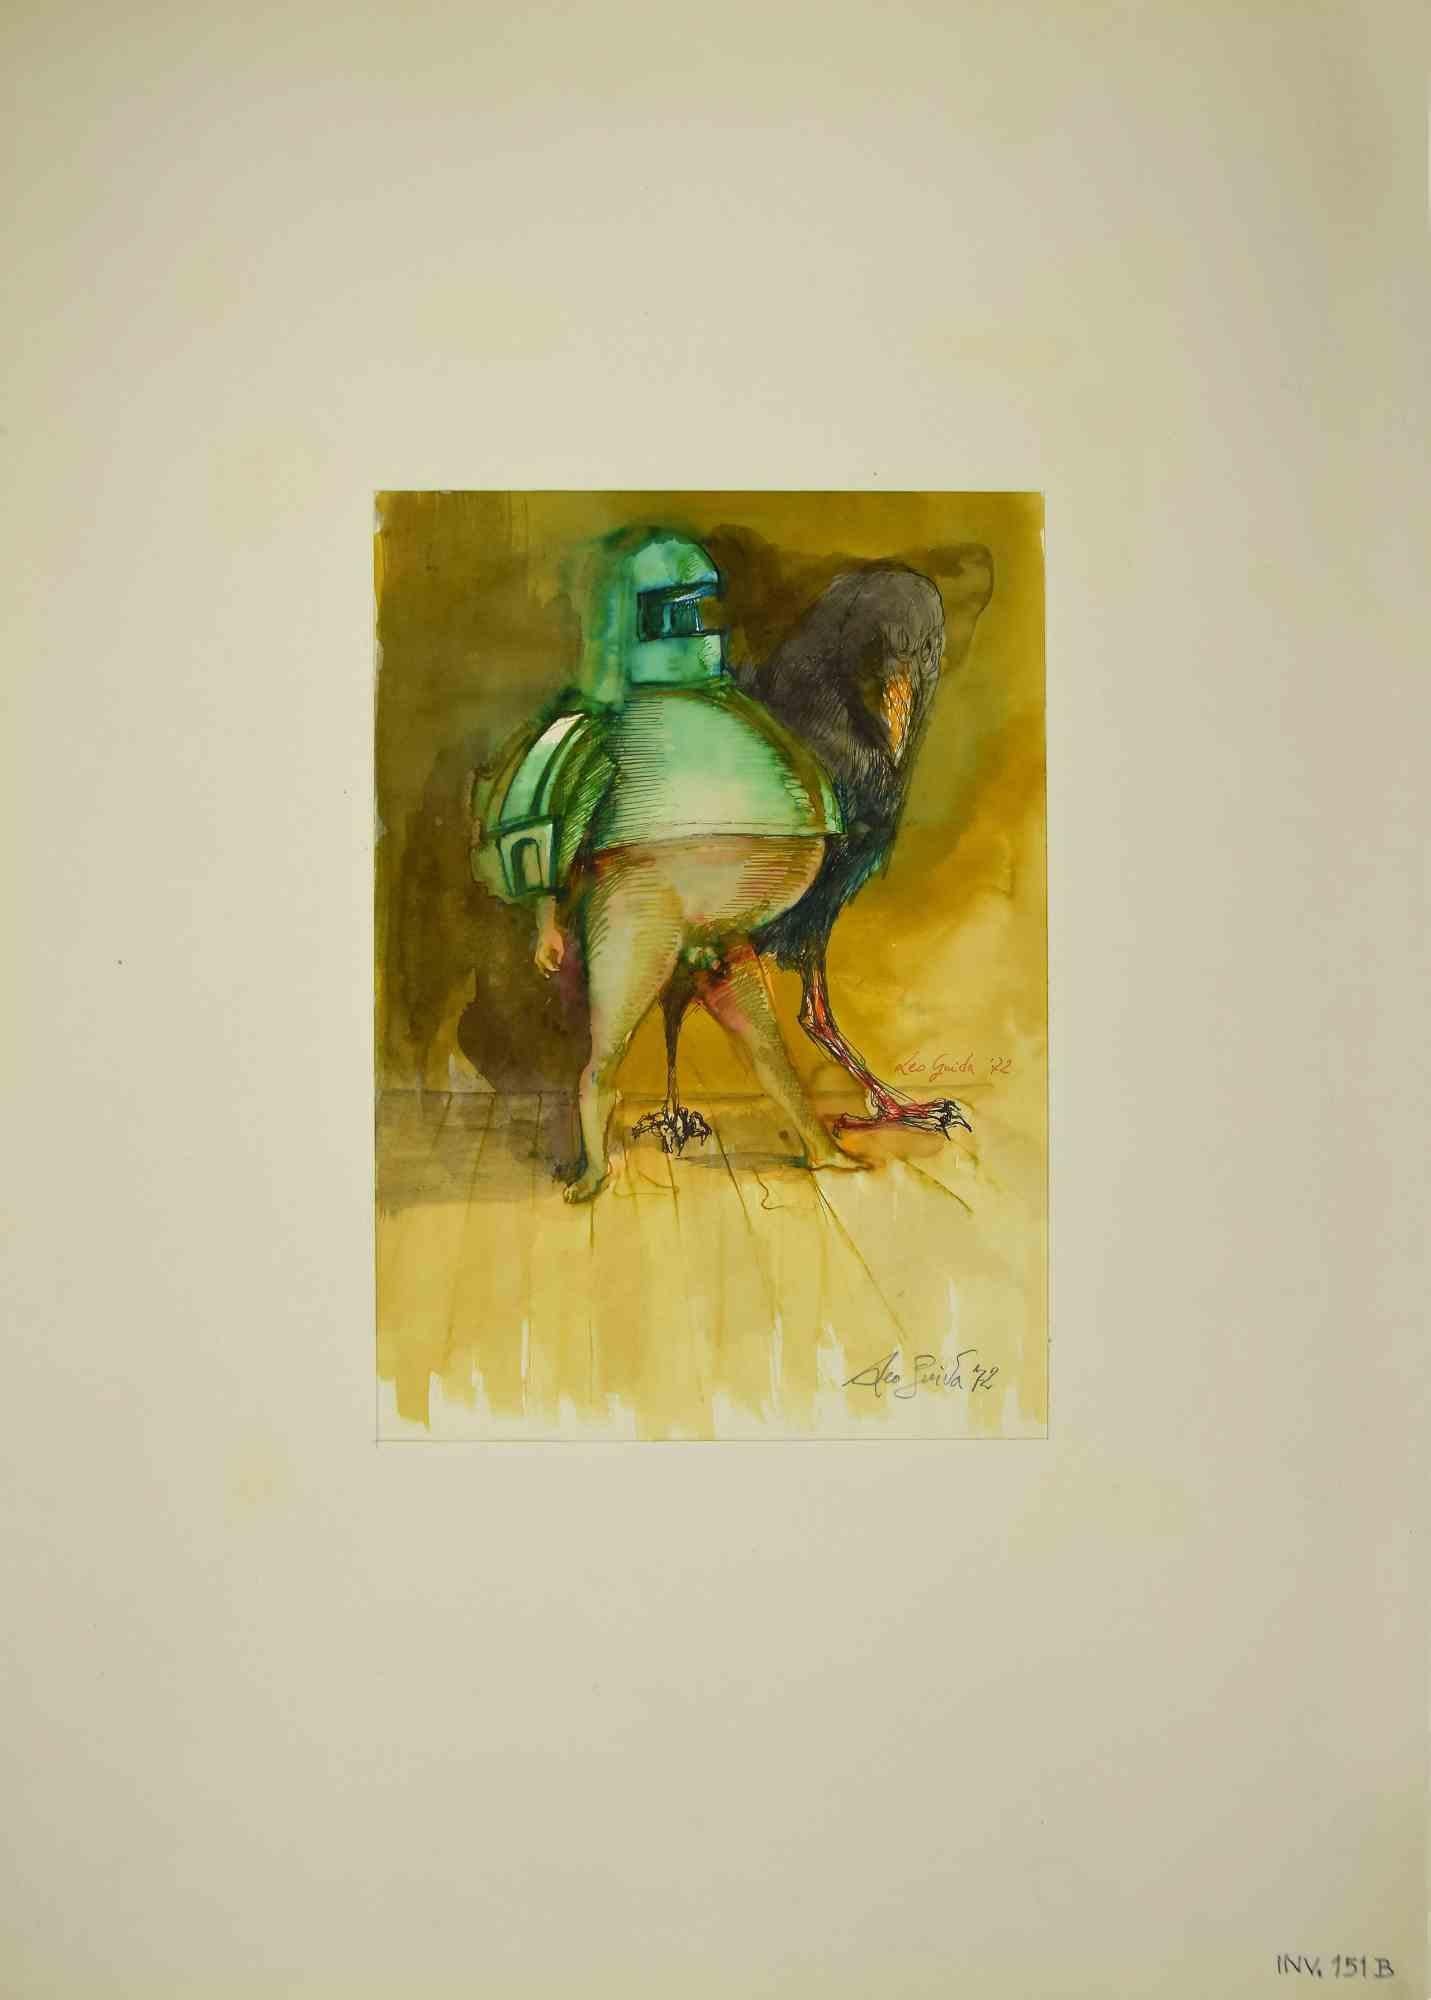 Knight ist eine Originalzeichnung in Aquarell und Tusche von Leo Guida aus dem Jahr 1972.

Guter Zustand.

Handsigniert.

Das Kunstwerk wird durch kräftige Striche in harmonischen Farben dargestellt.